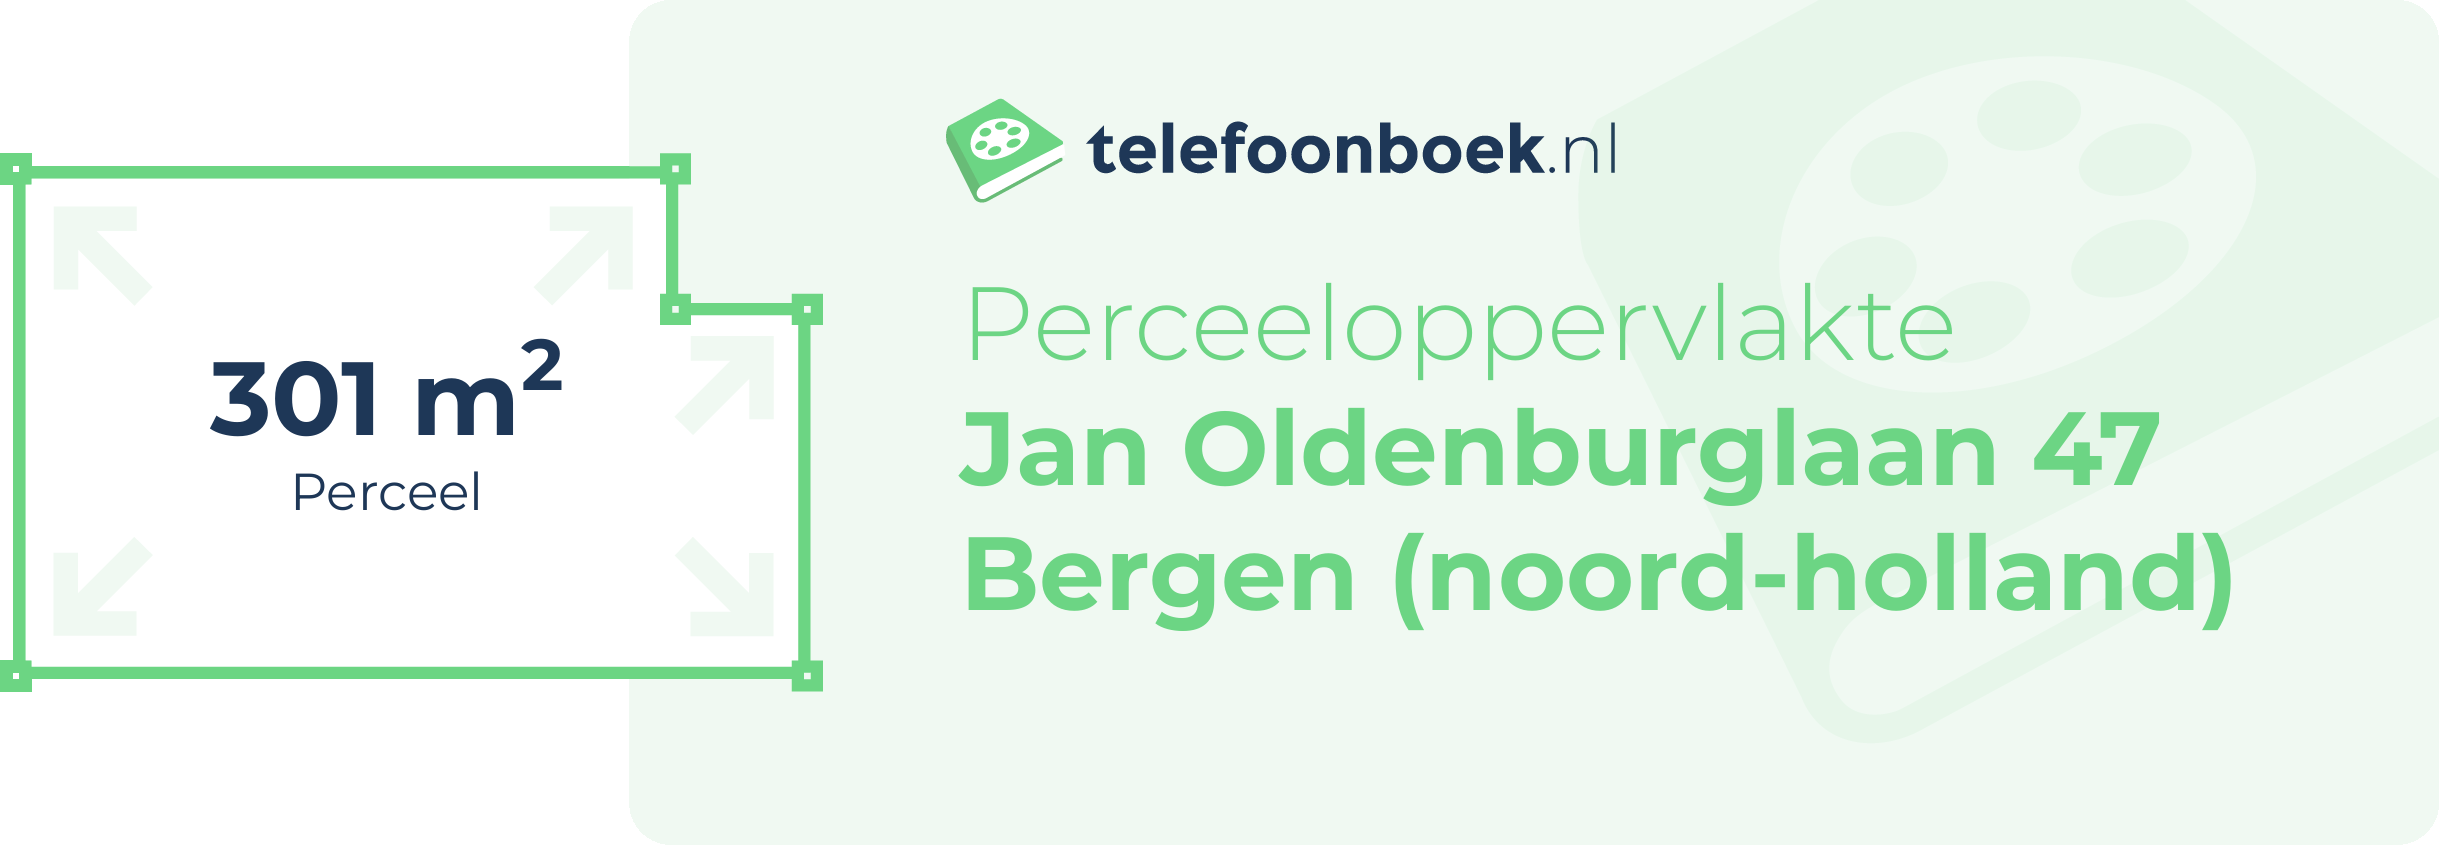 Perceeloppervlakte Jan Oldenburglaan 47 Bergen (Noord-Holland)